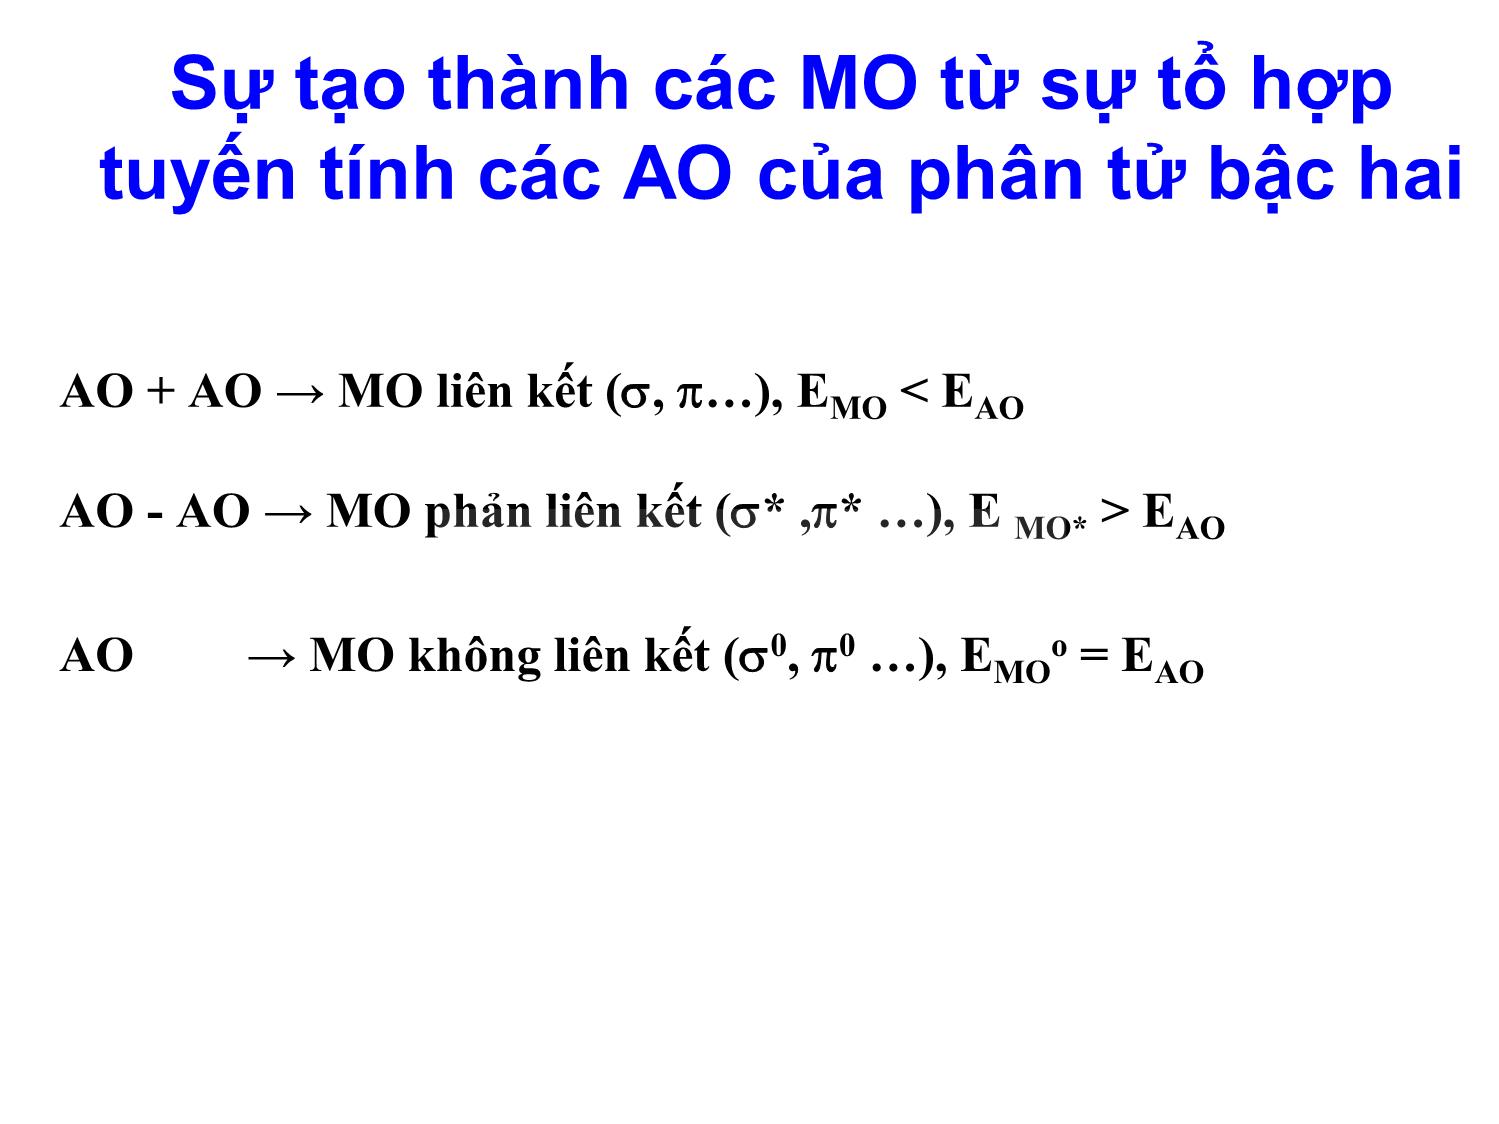 Bài giảng môn Hóa đại cương: Phương pháp orbital phân tử (Molecular Orbital - MO) - Nguyễn Minh Kha trang 9